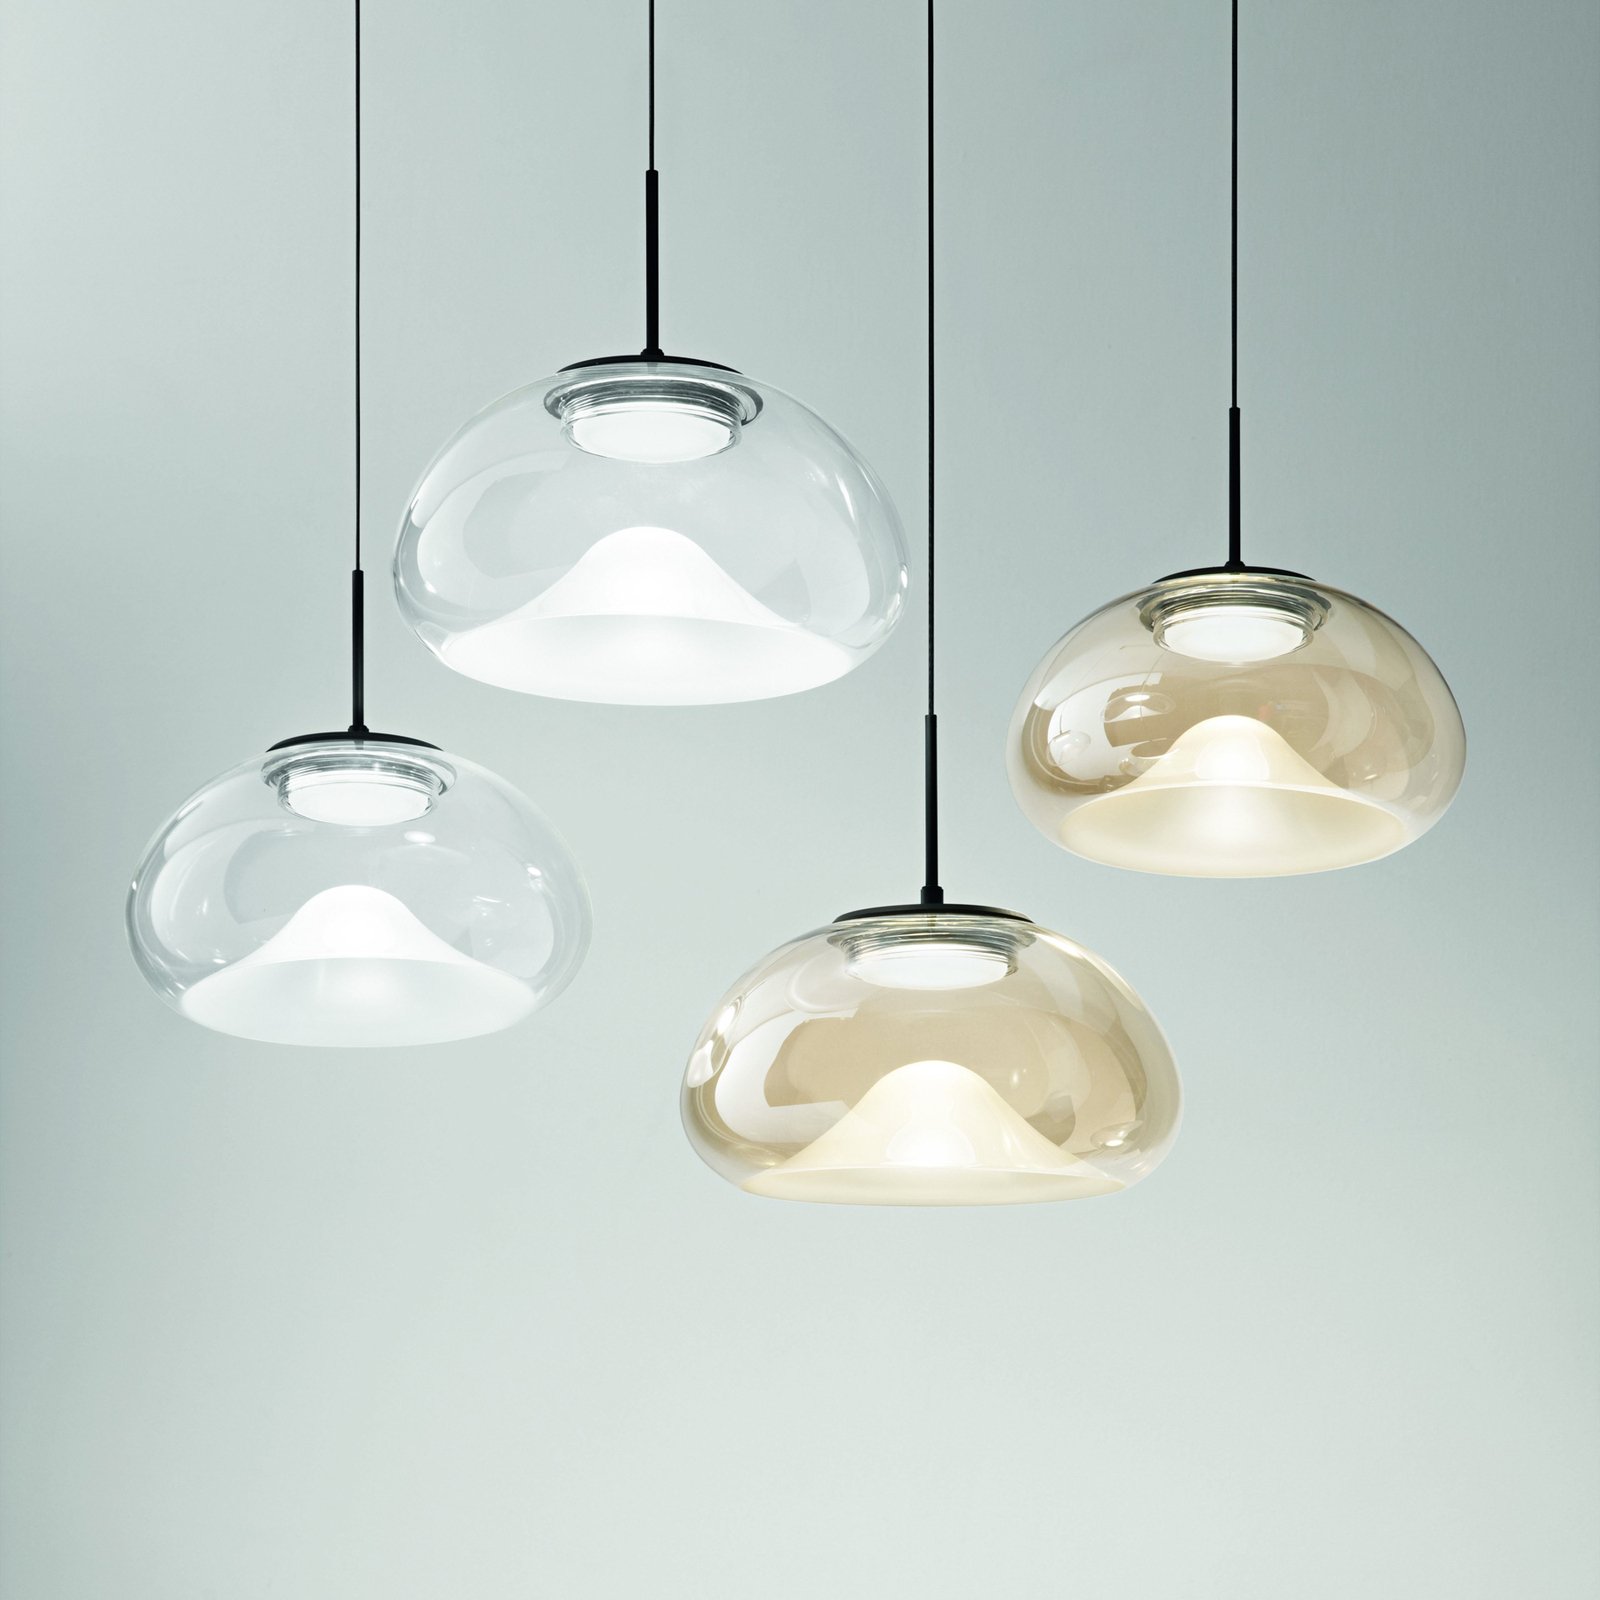 Hanglamp Brena, transparant, 1-lamp, dimbaar, CCT